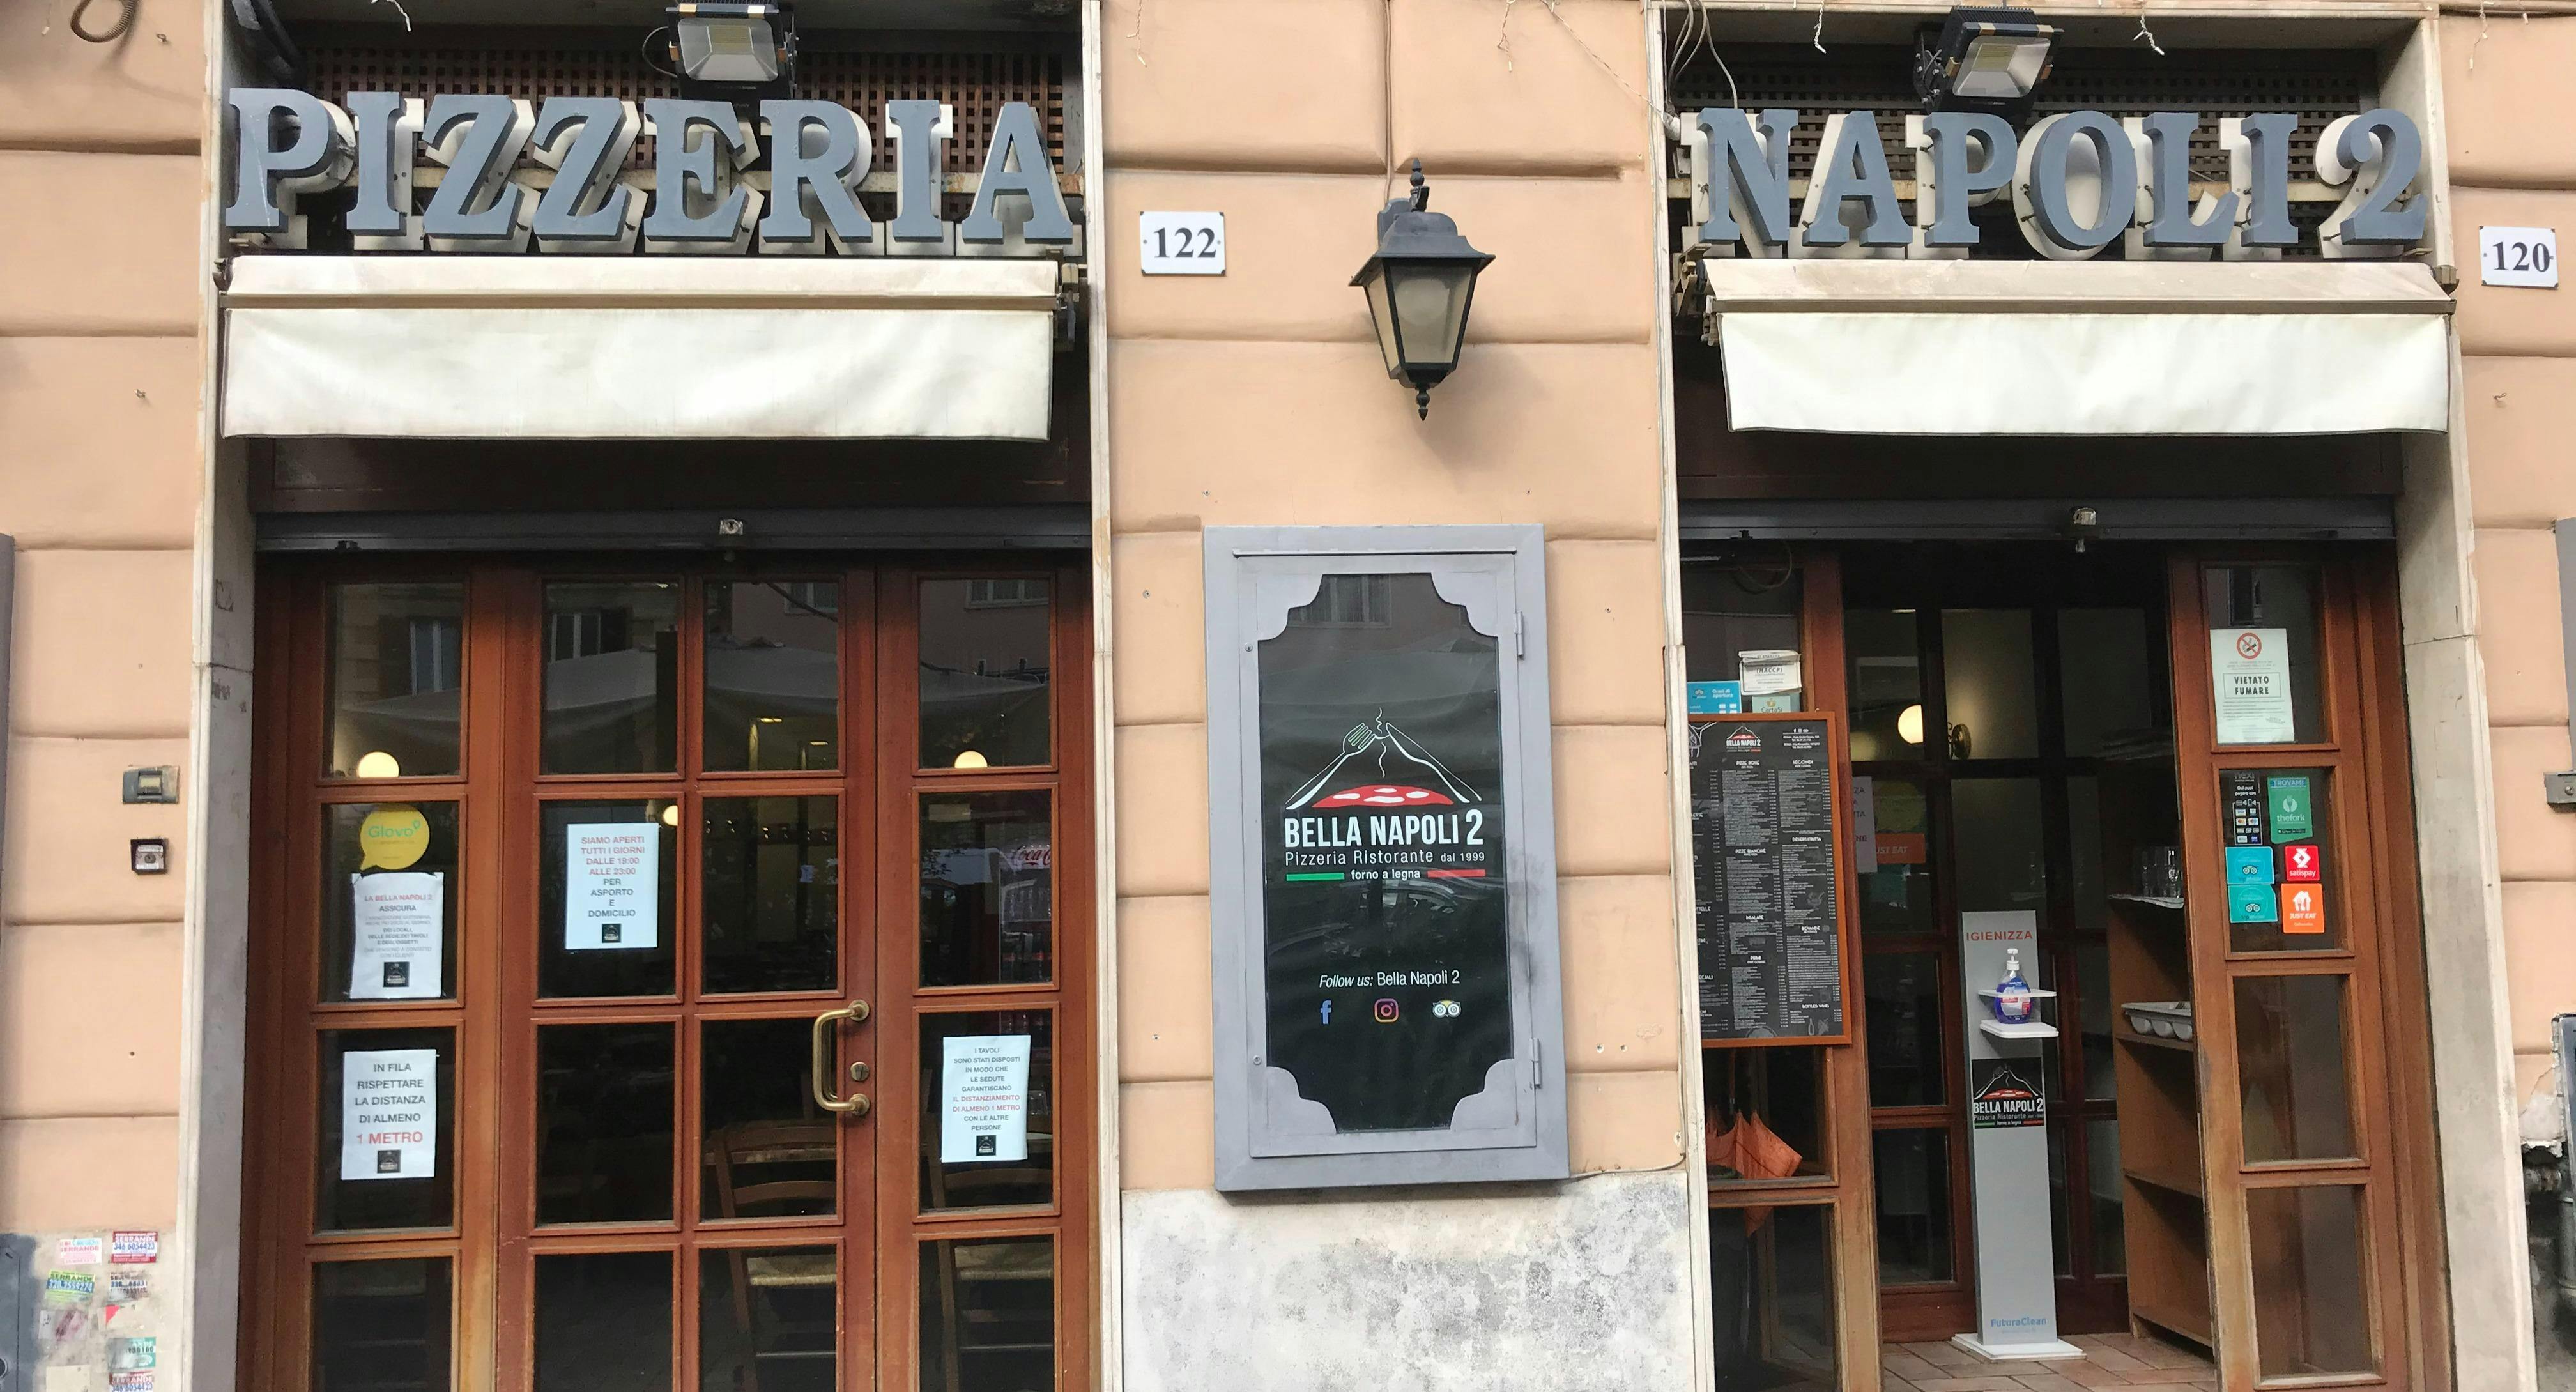 Photo of restaurant Bella Napoli 2 in Prati, Rome